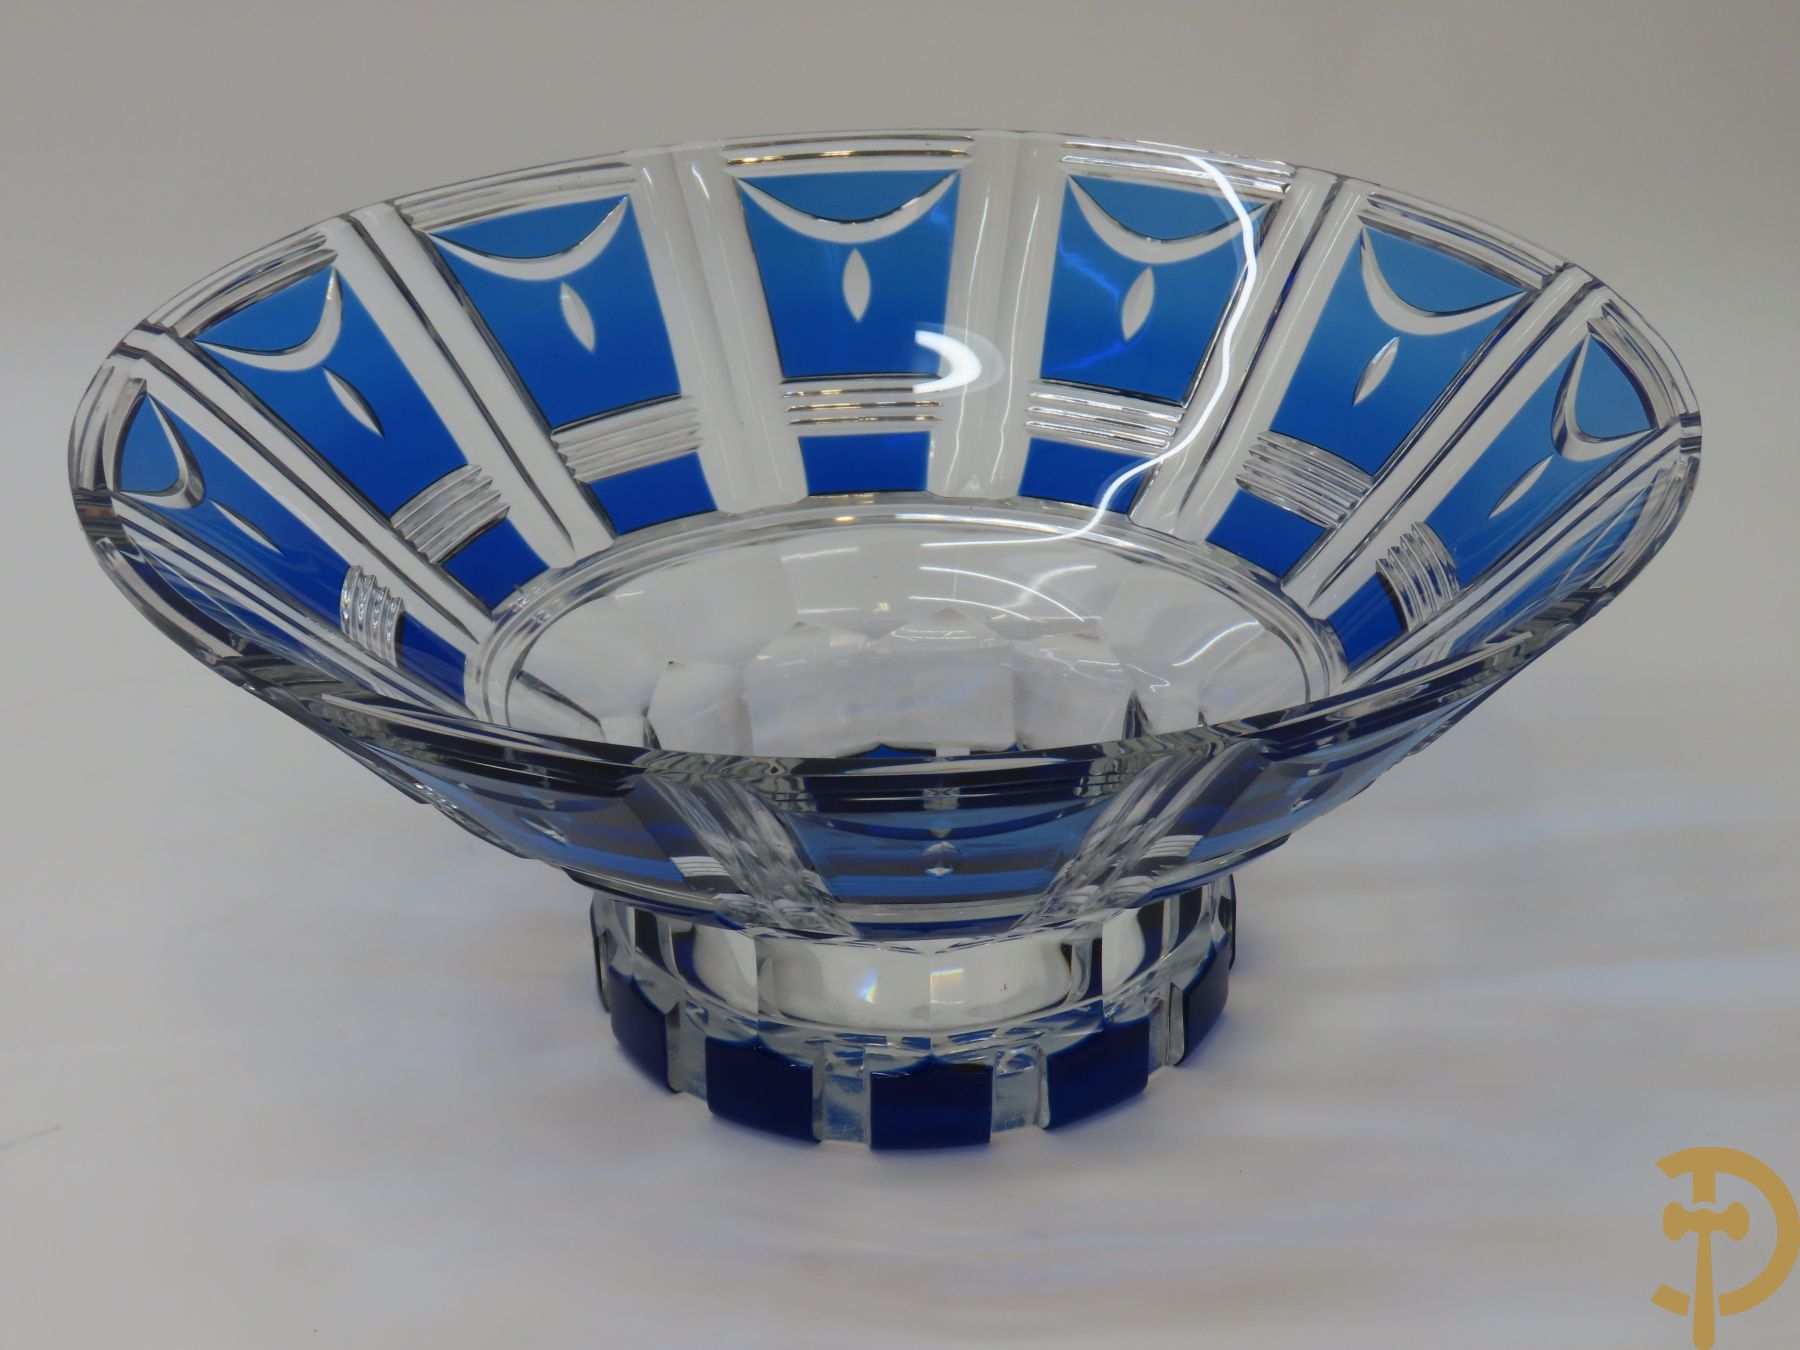 Blauwe handgeslepen kristallen Val-Saint-Lambert coupe, Art Deco periode